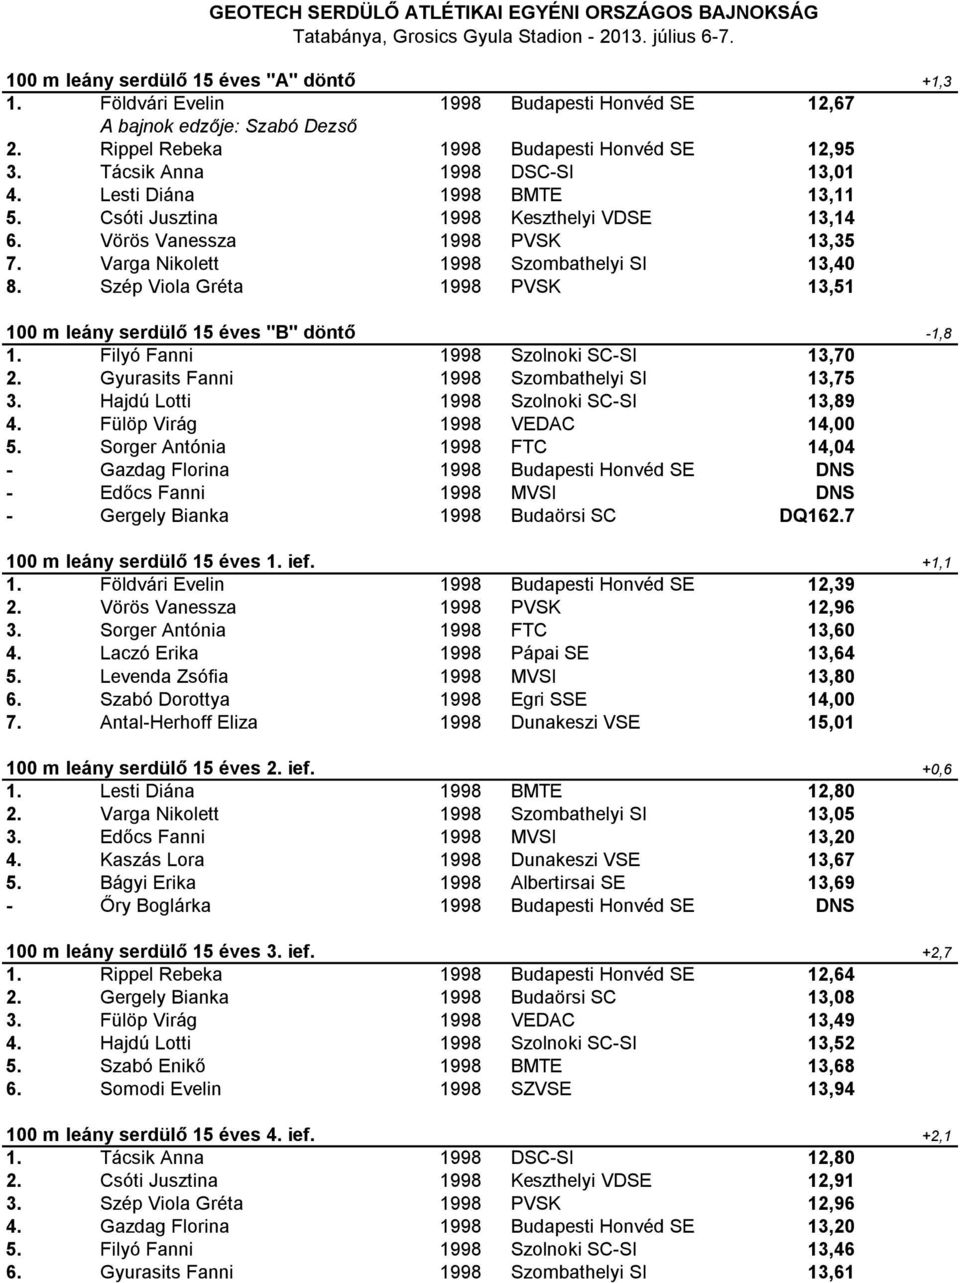 Szép Viola Gréta 1998 PVSK 13,51 100 m leány serdülő 15 éves "B" döntő -1,8 1. Filyó Fanni 1998 Szolnoki SC-SI 13,70 2. Gyurasits Fanni 1998 Szombathelyi SI 13,75 3.